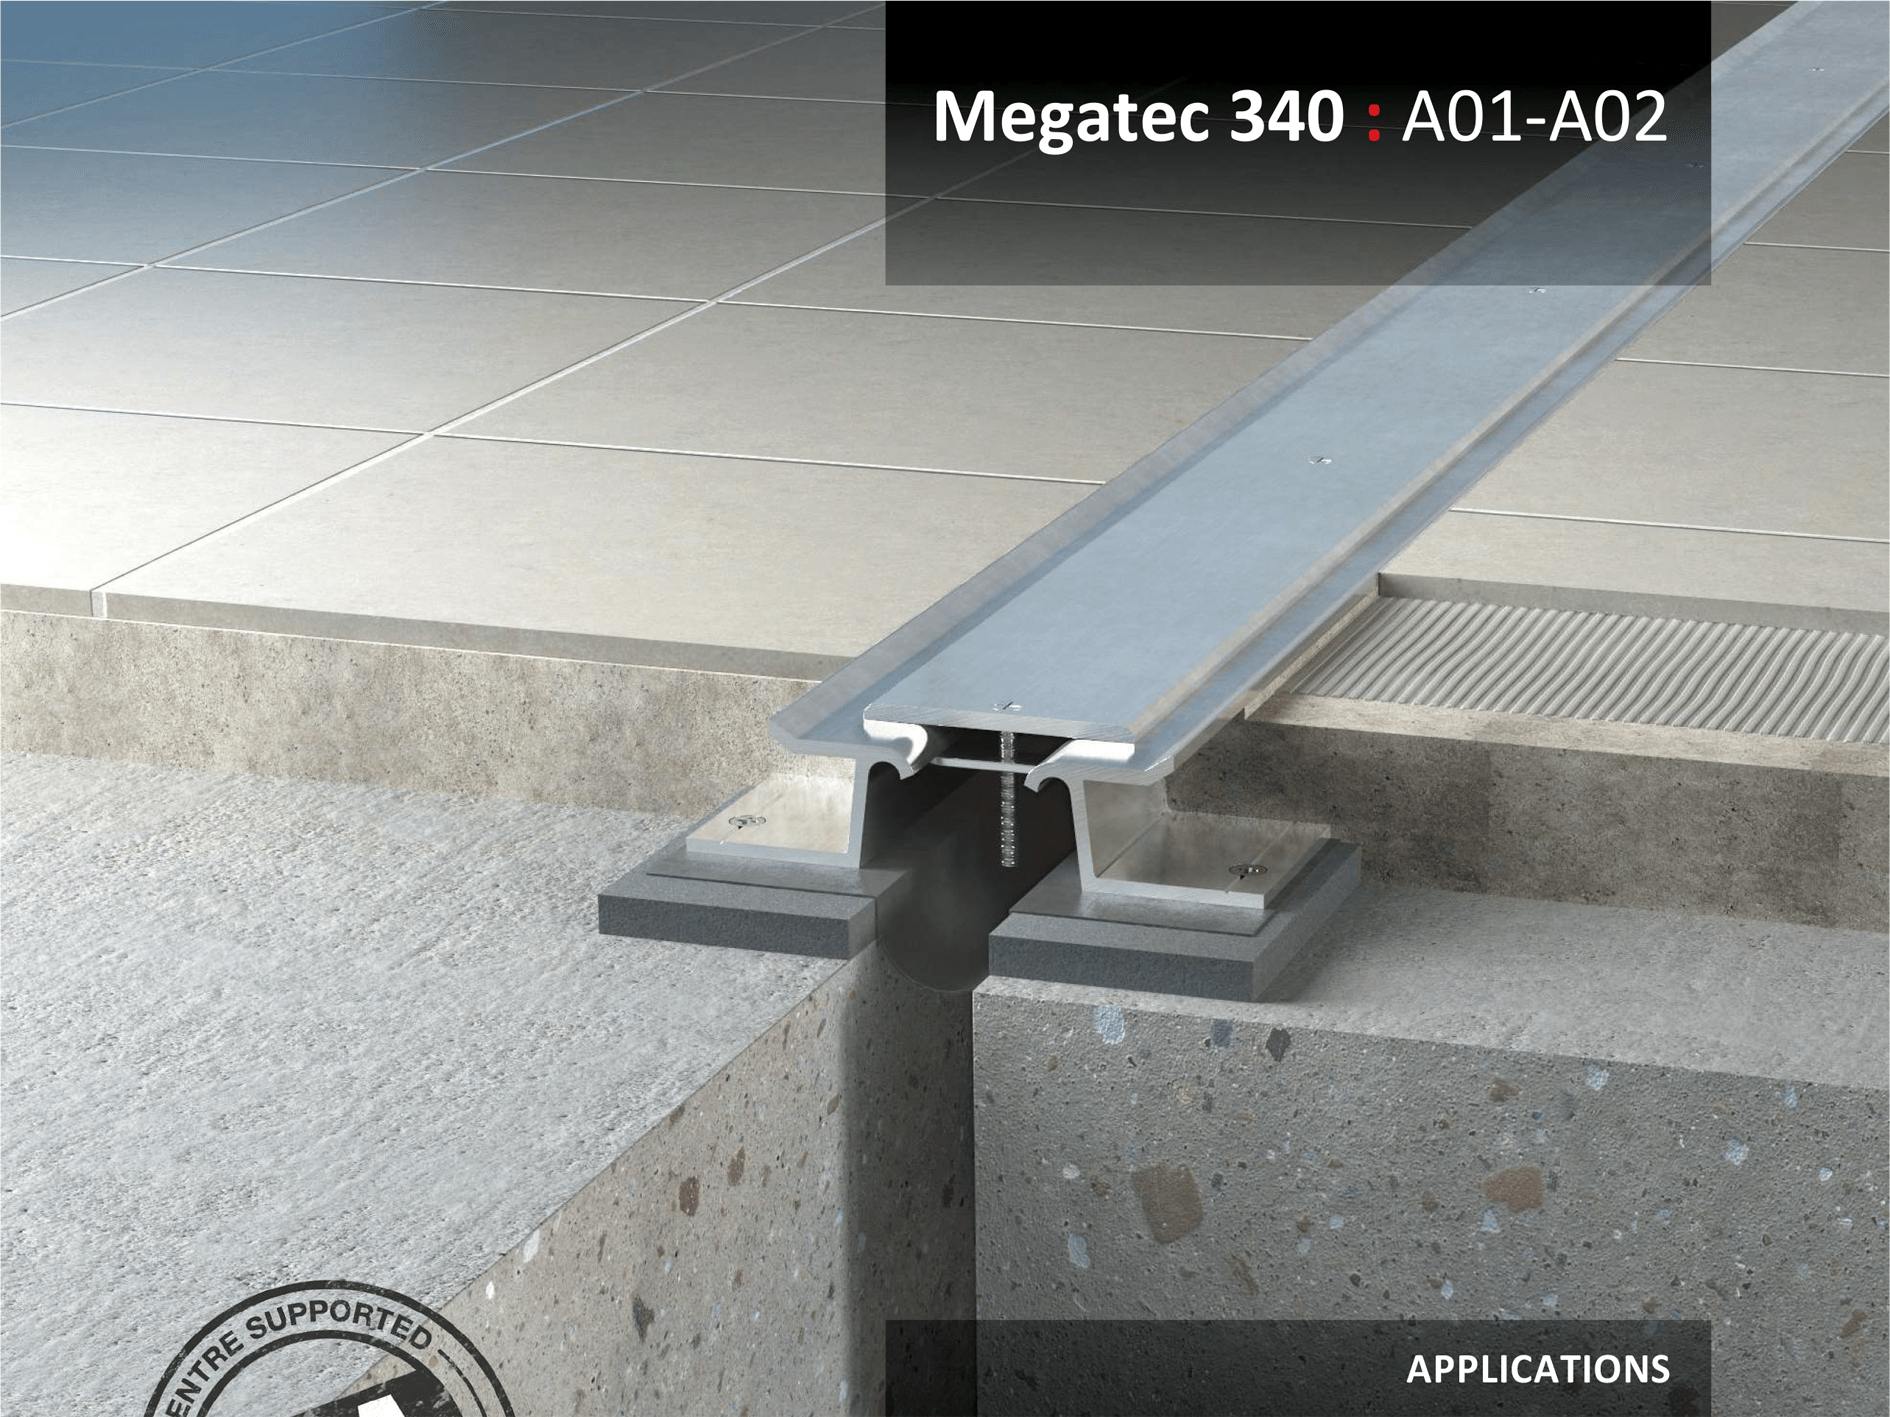 Megatec-340 a01